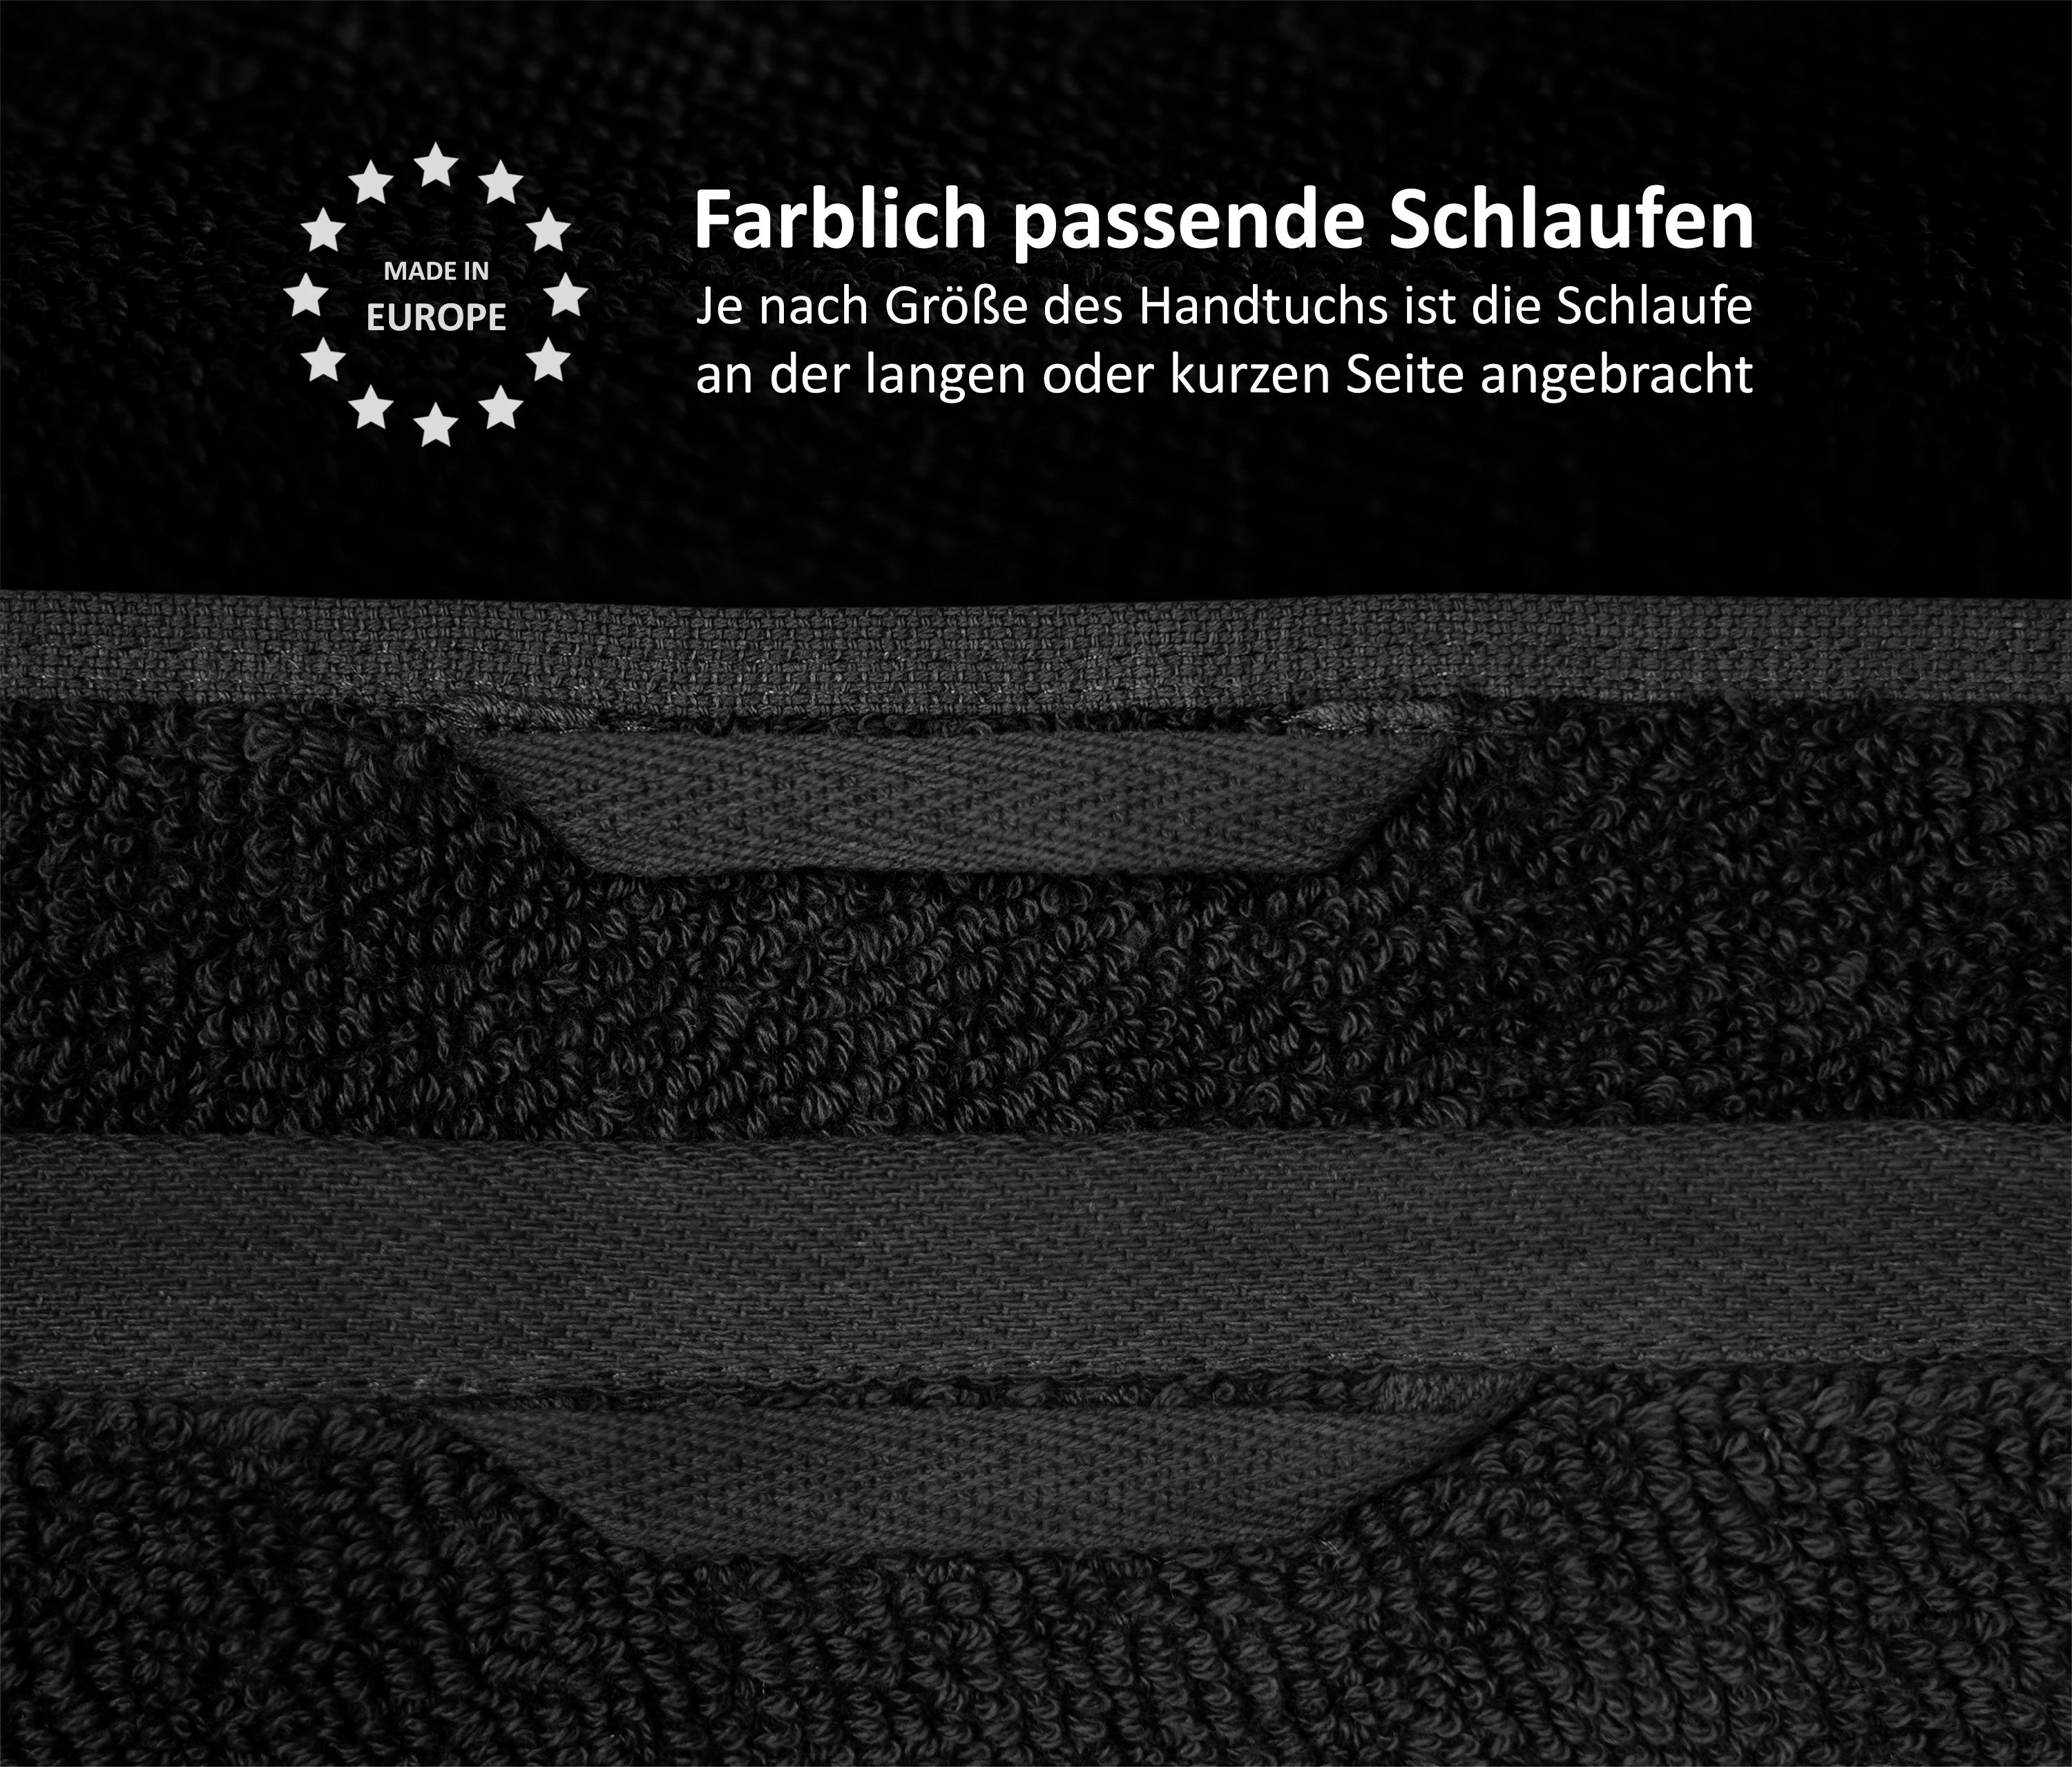 Handtuch Set, Set Handtuch aus in Europe, Beautex 550g/m) Frottier Frottier, 100% Schwarz (Multischlaufen-Optik, Premium Baumwolle Made Set